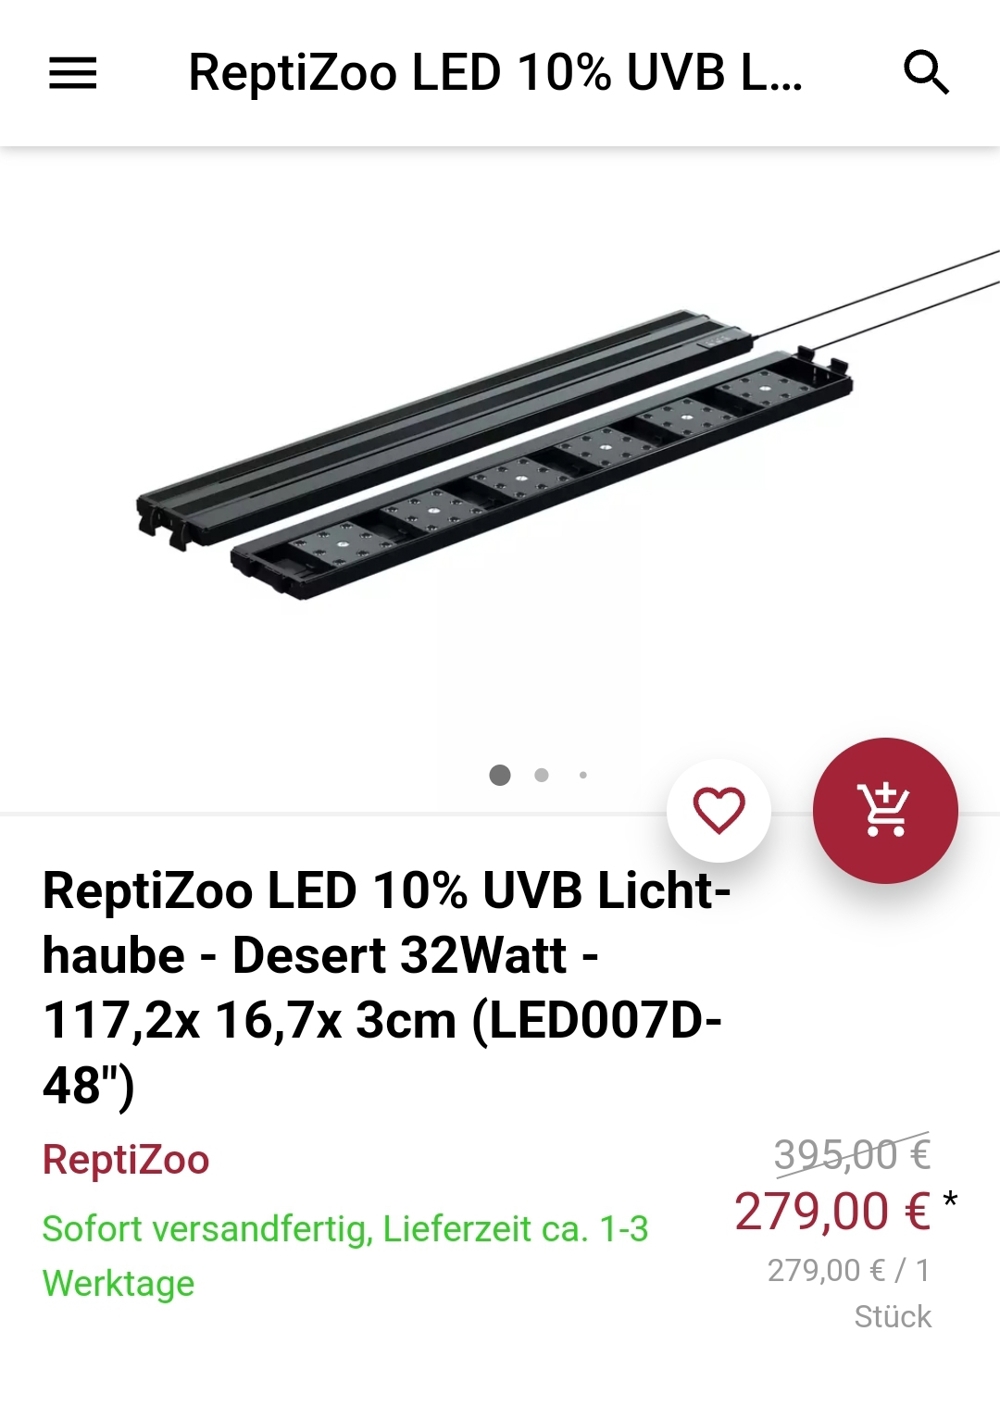 Repti zoo LED